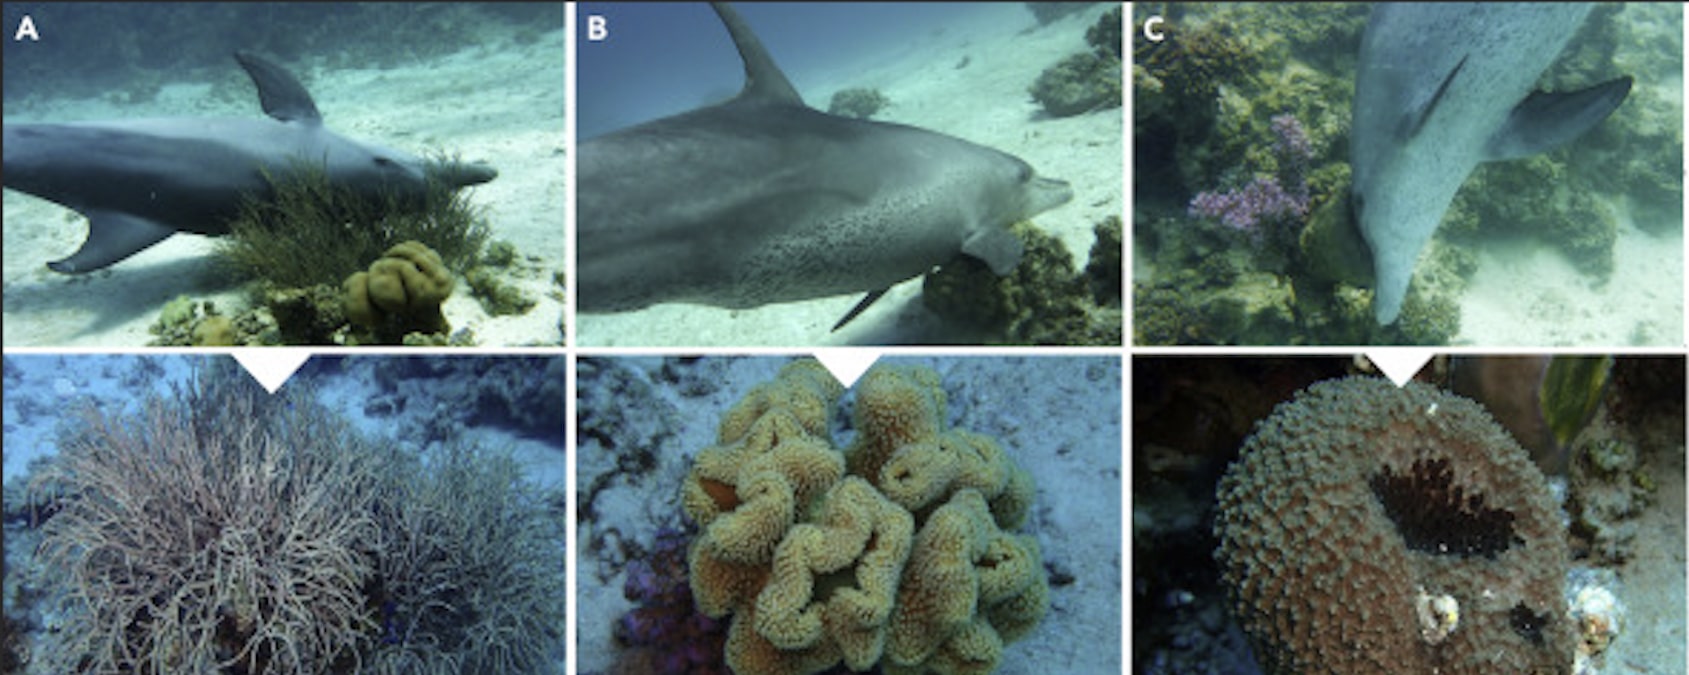 Δελφίνια: Χρησιμοποιούν κοραλλιογενή ύφαλο για τη θεραπεία δερματικών παθήσεων, σύμφωνα με μελέτη